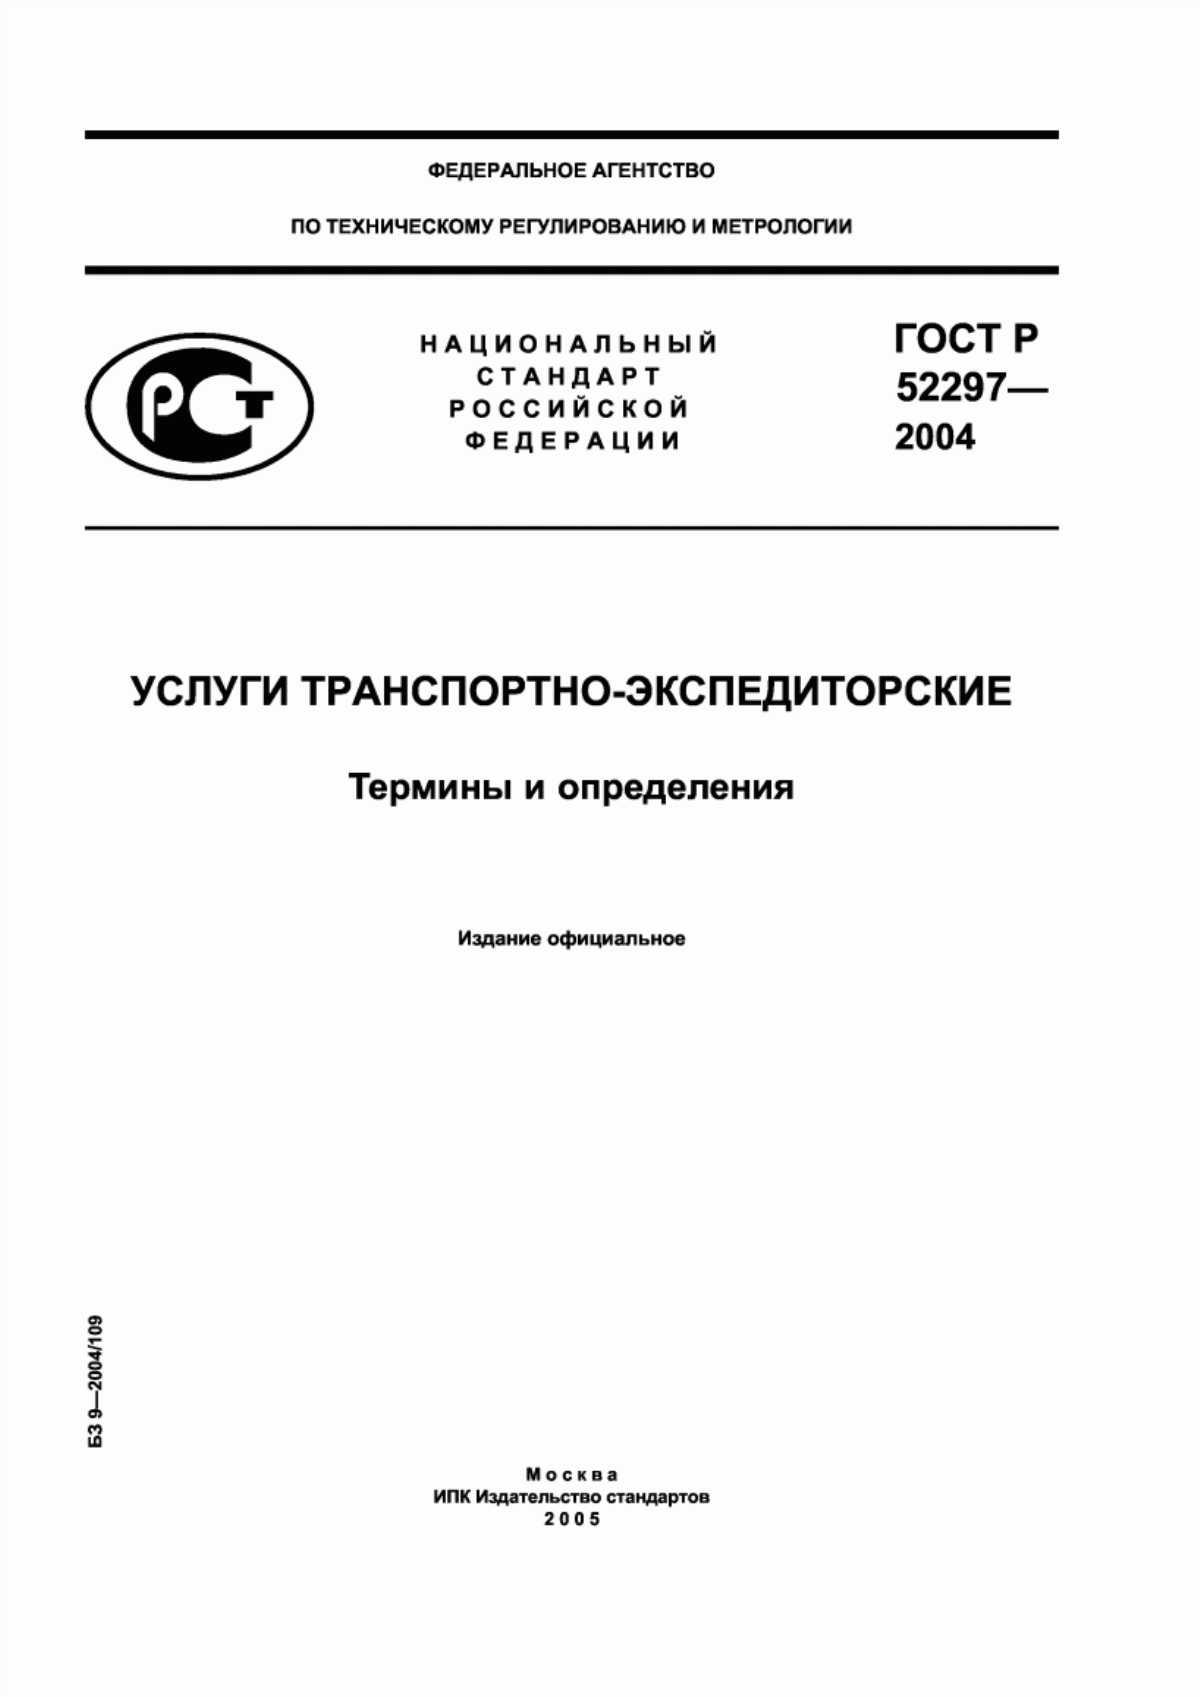 ГОСТ Р 52297-2004 Услуги транспортно-экспедиторские. Термины и определения